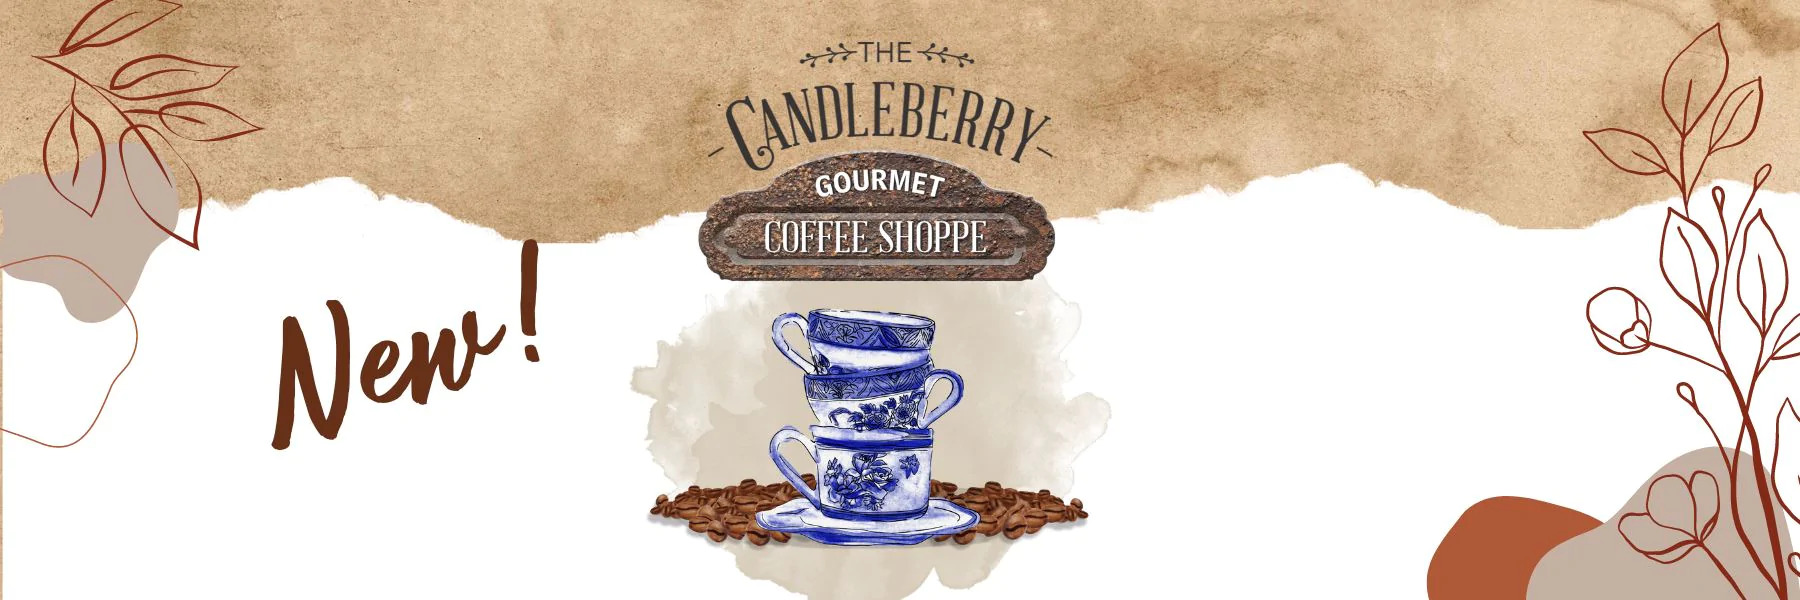 candleberry-kavova-kolekce-coffee-shoppe